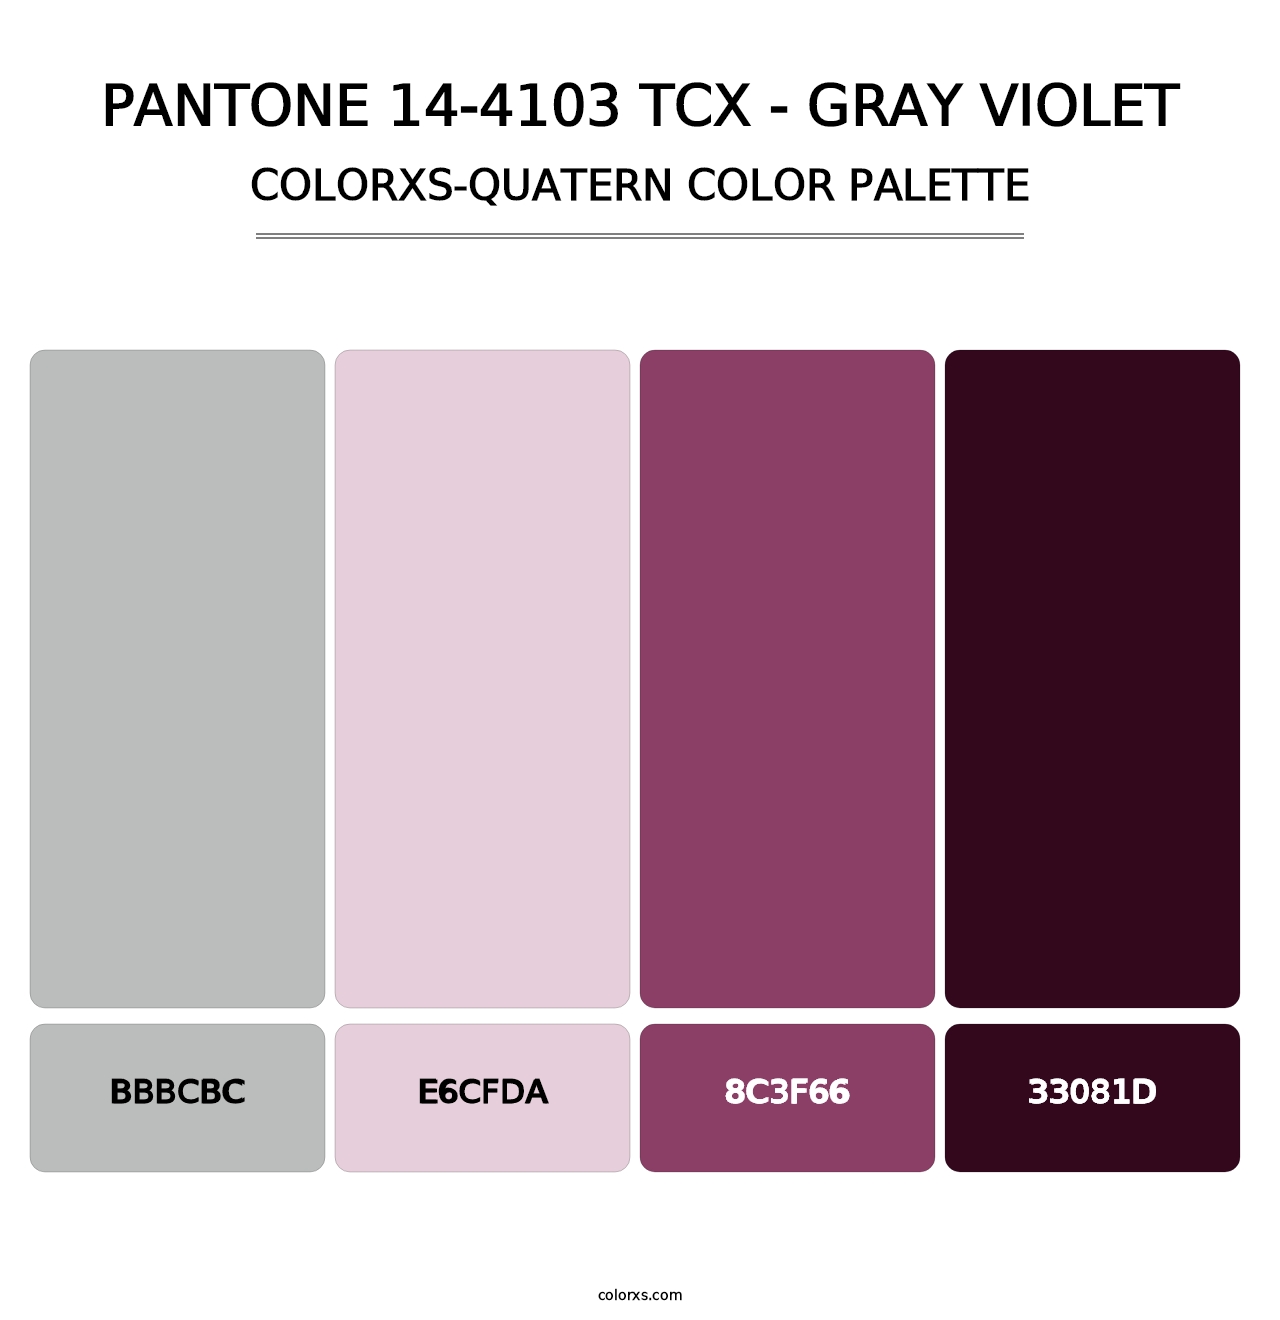 PANTONE 14-4103 TCX - Gray Violet - Colorxs Quatern Palette